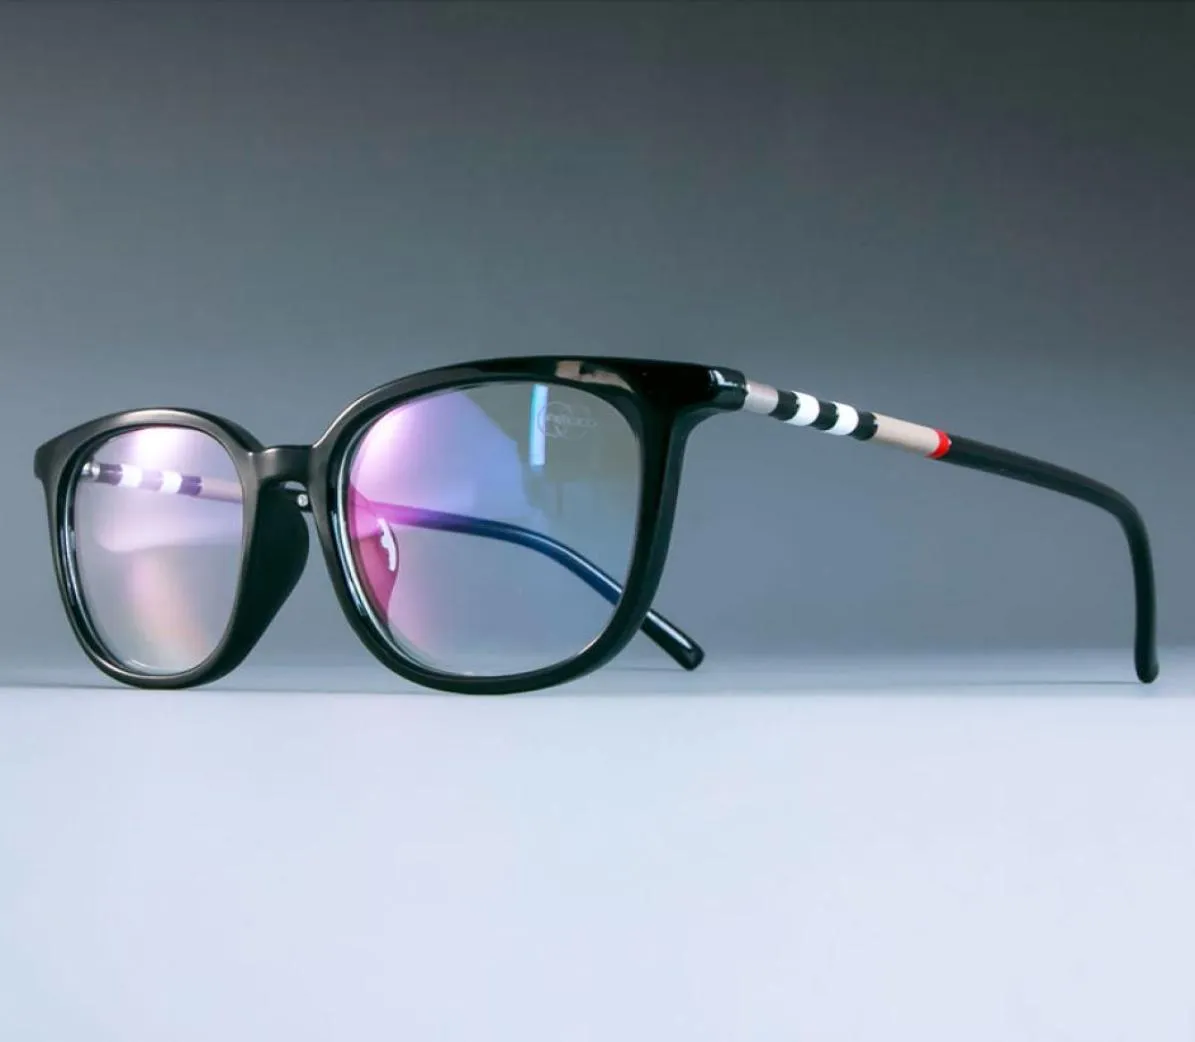 Wholeeye Glasses Frames Men Luxury Styles光学ファッションコンピューターメガネ6150888